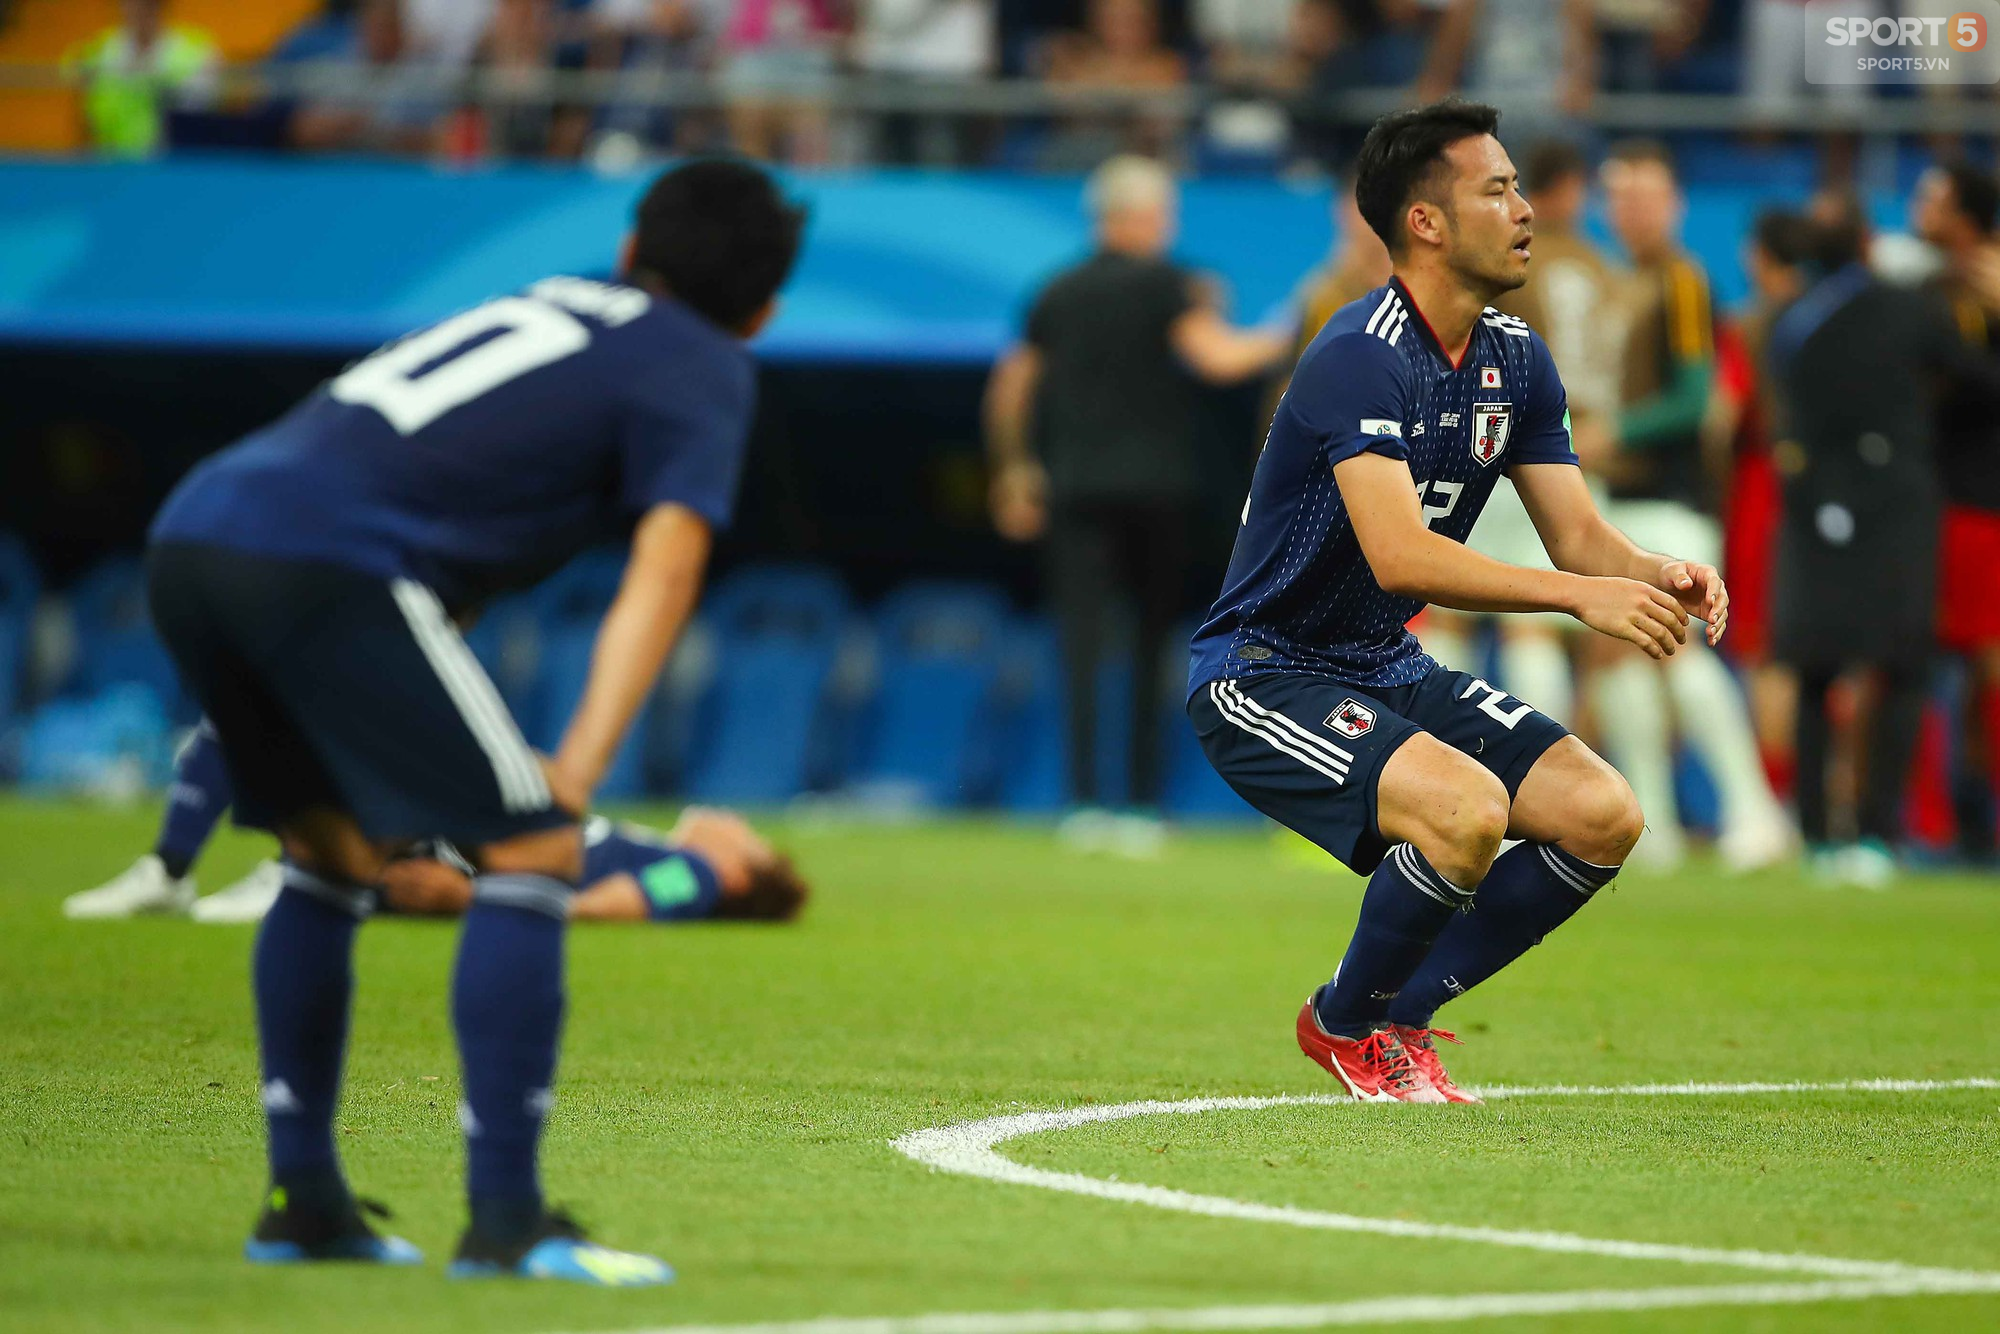 Cầu thủ Nhật Bản đổ gục, fan òa khóc sau trận thua ngược Bỉ - Ảnh 3.